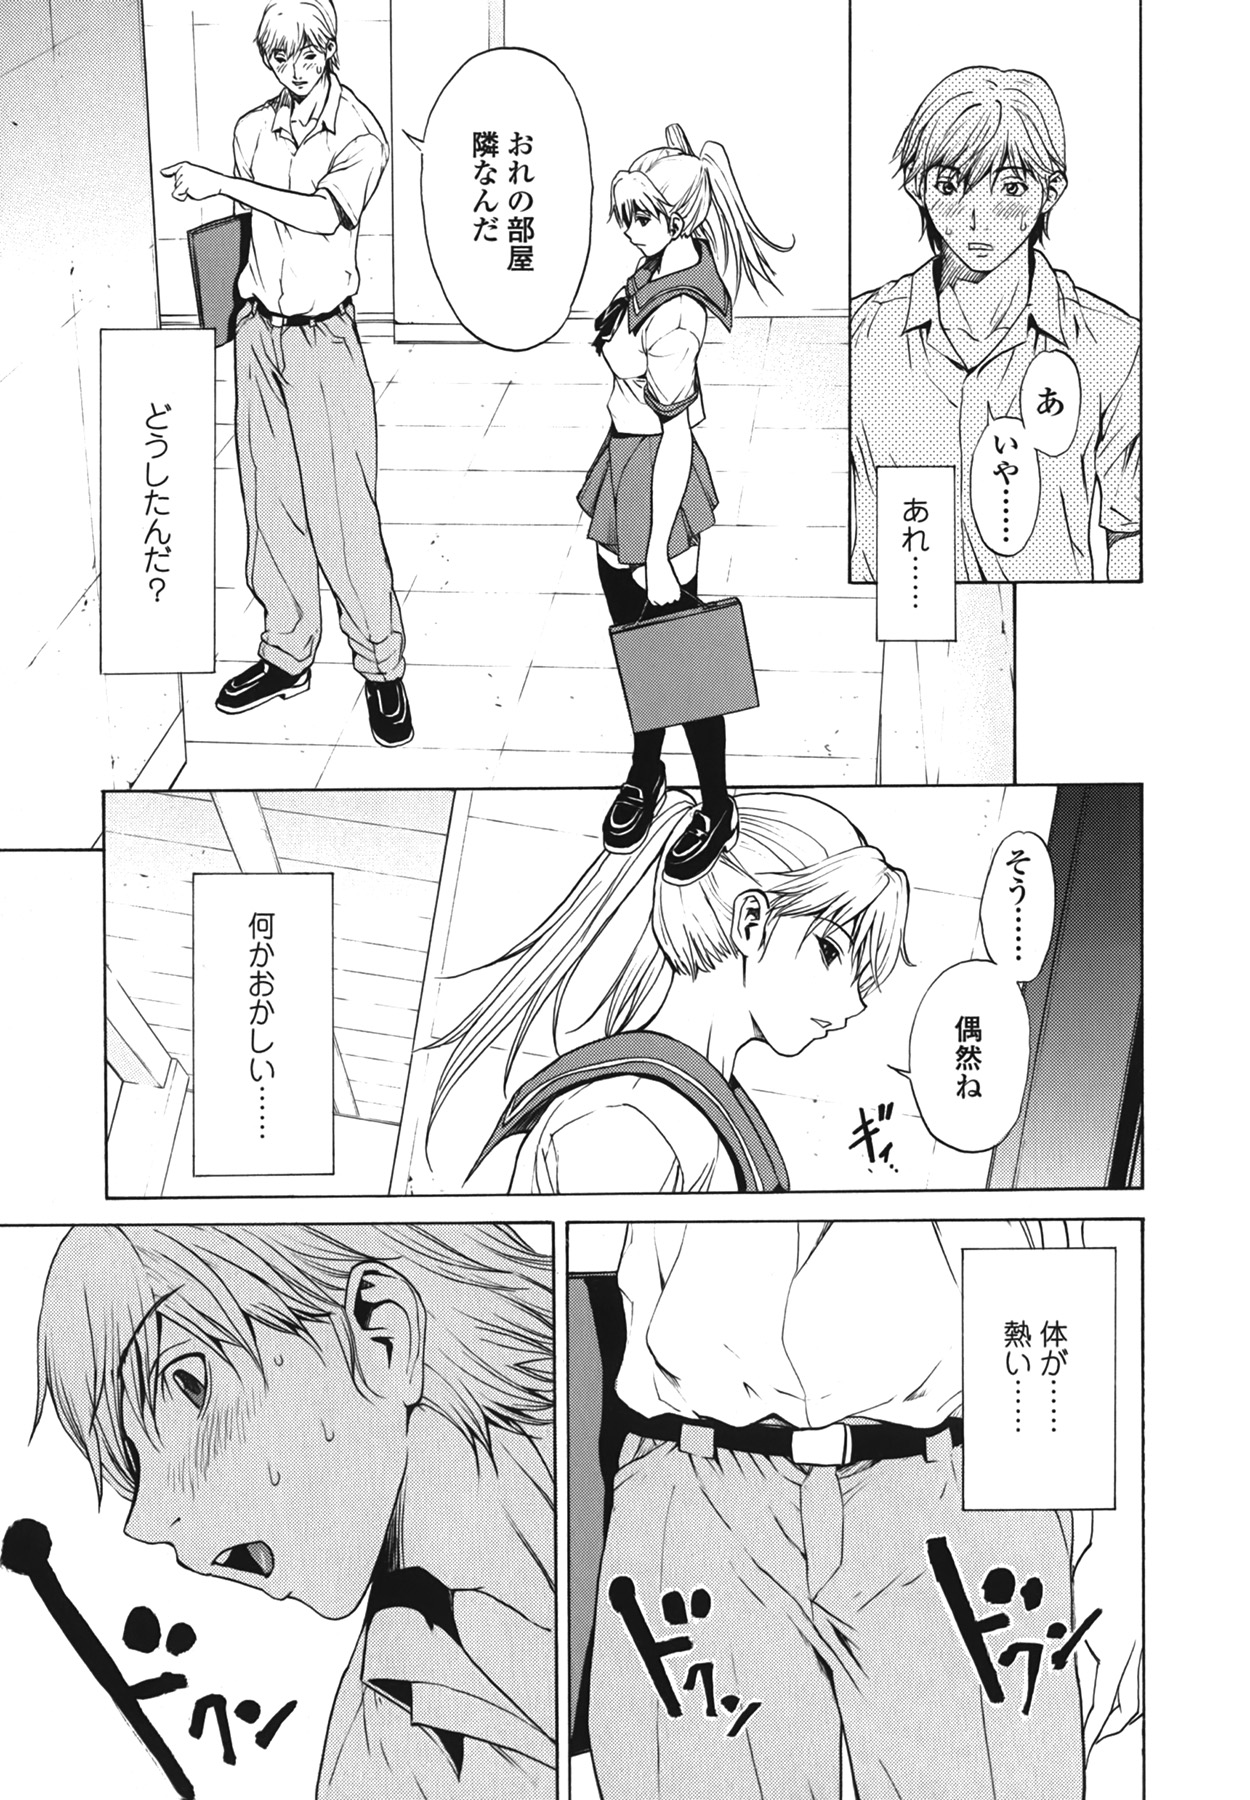 (成年コミック) [OKAWARI] ストロベリー☆ファクトリー + 初回限定版CD(mp3) [2009-12-10]